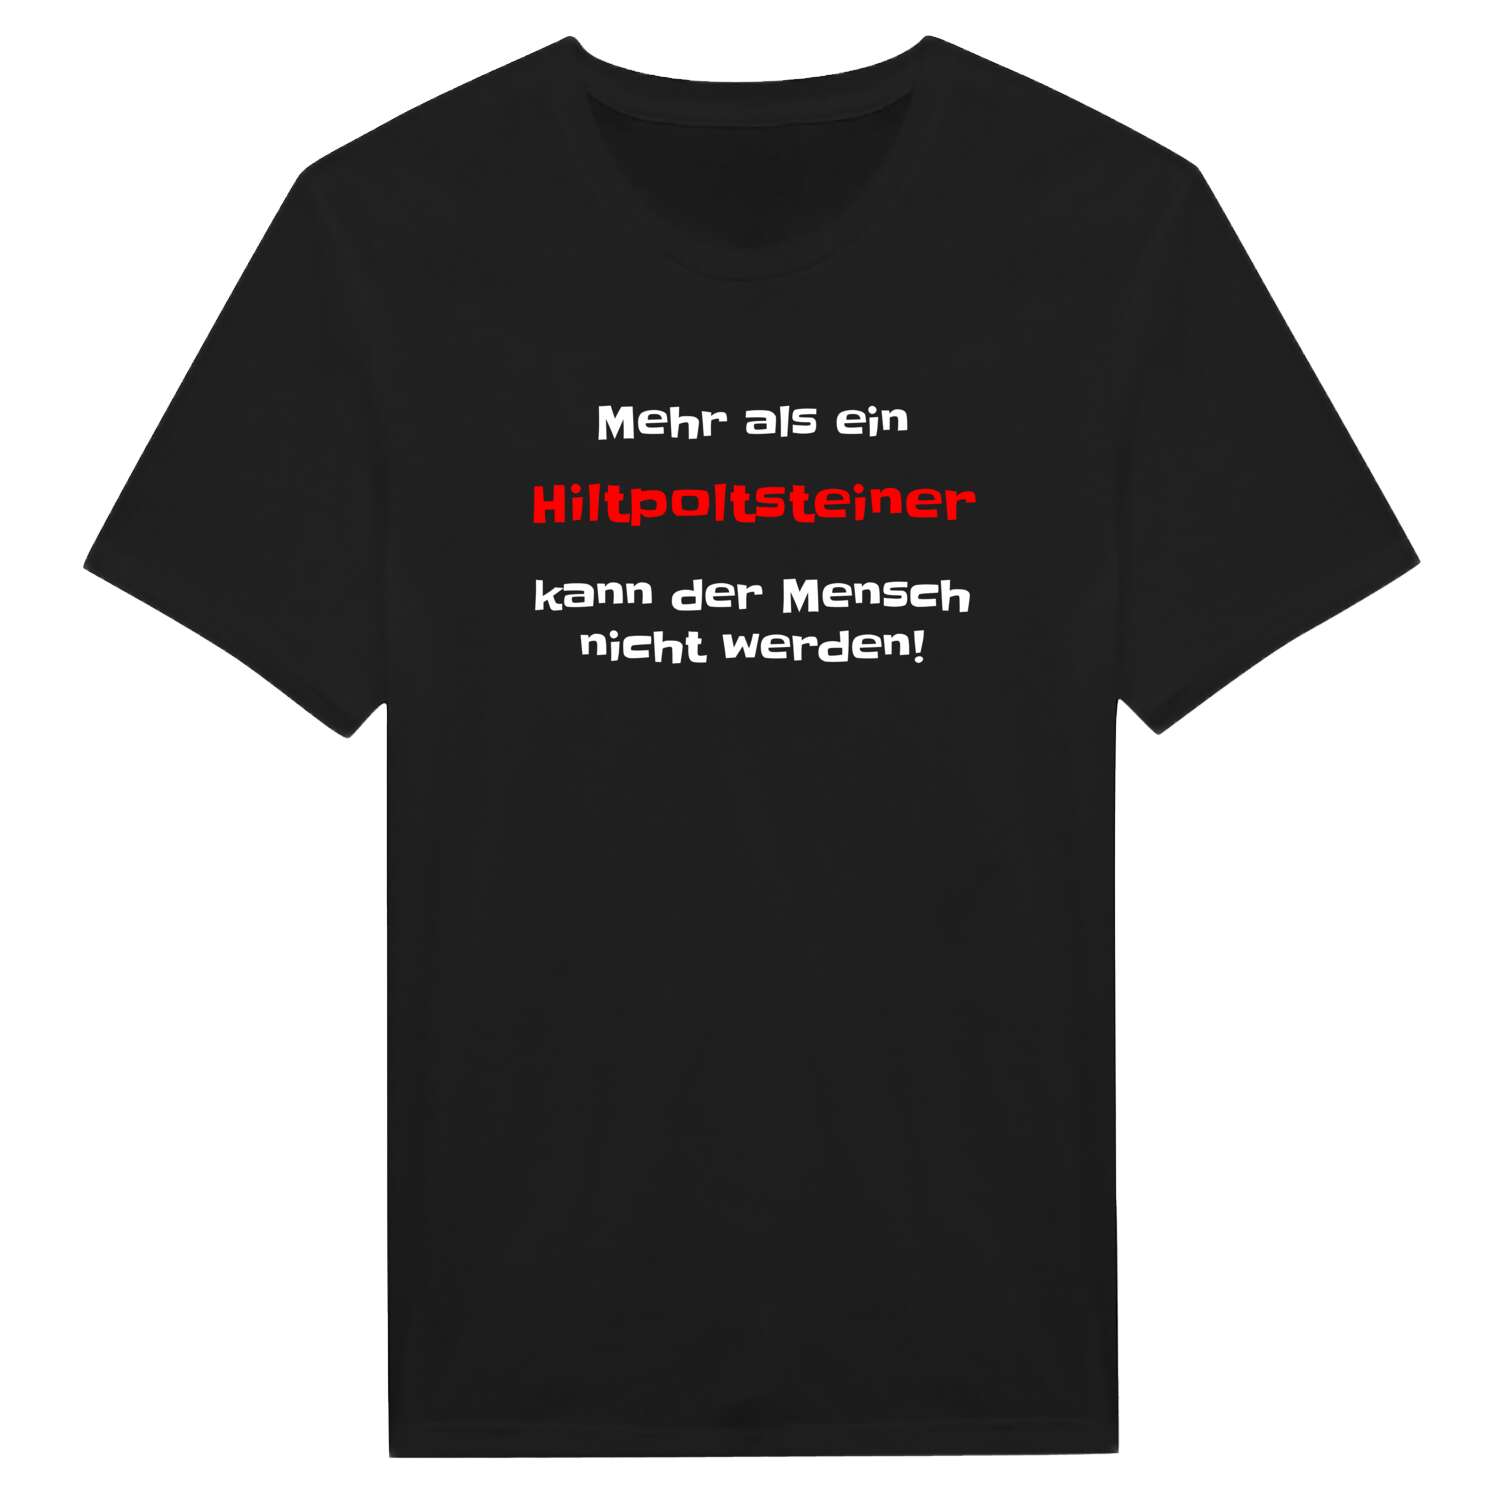 Hiltpoltstein T-Shirt »Mehr als ein«